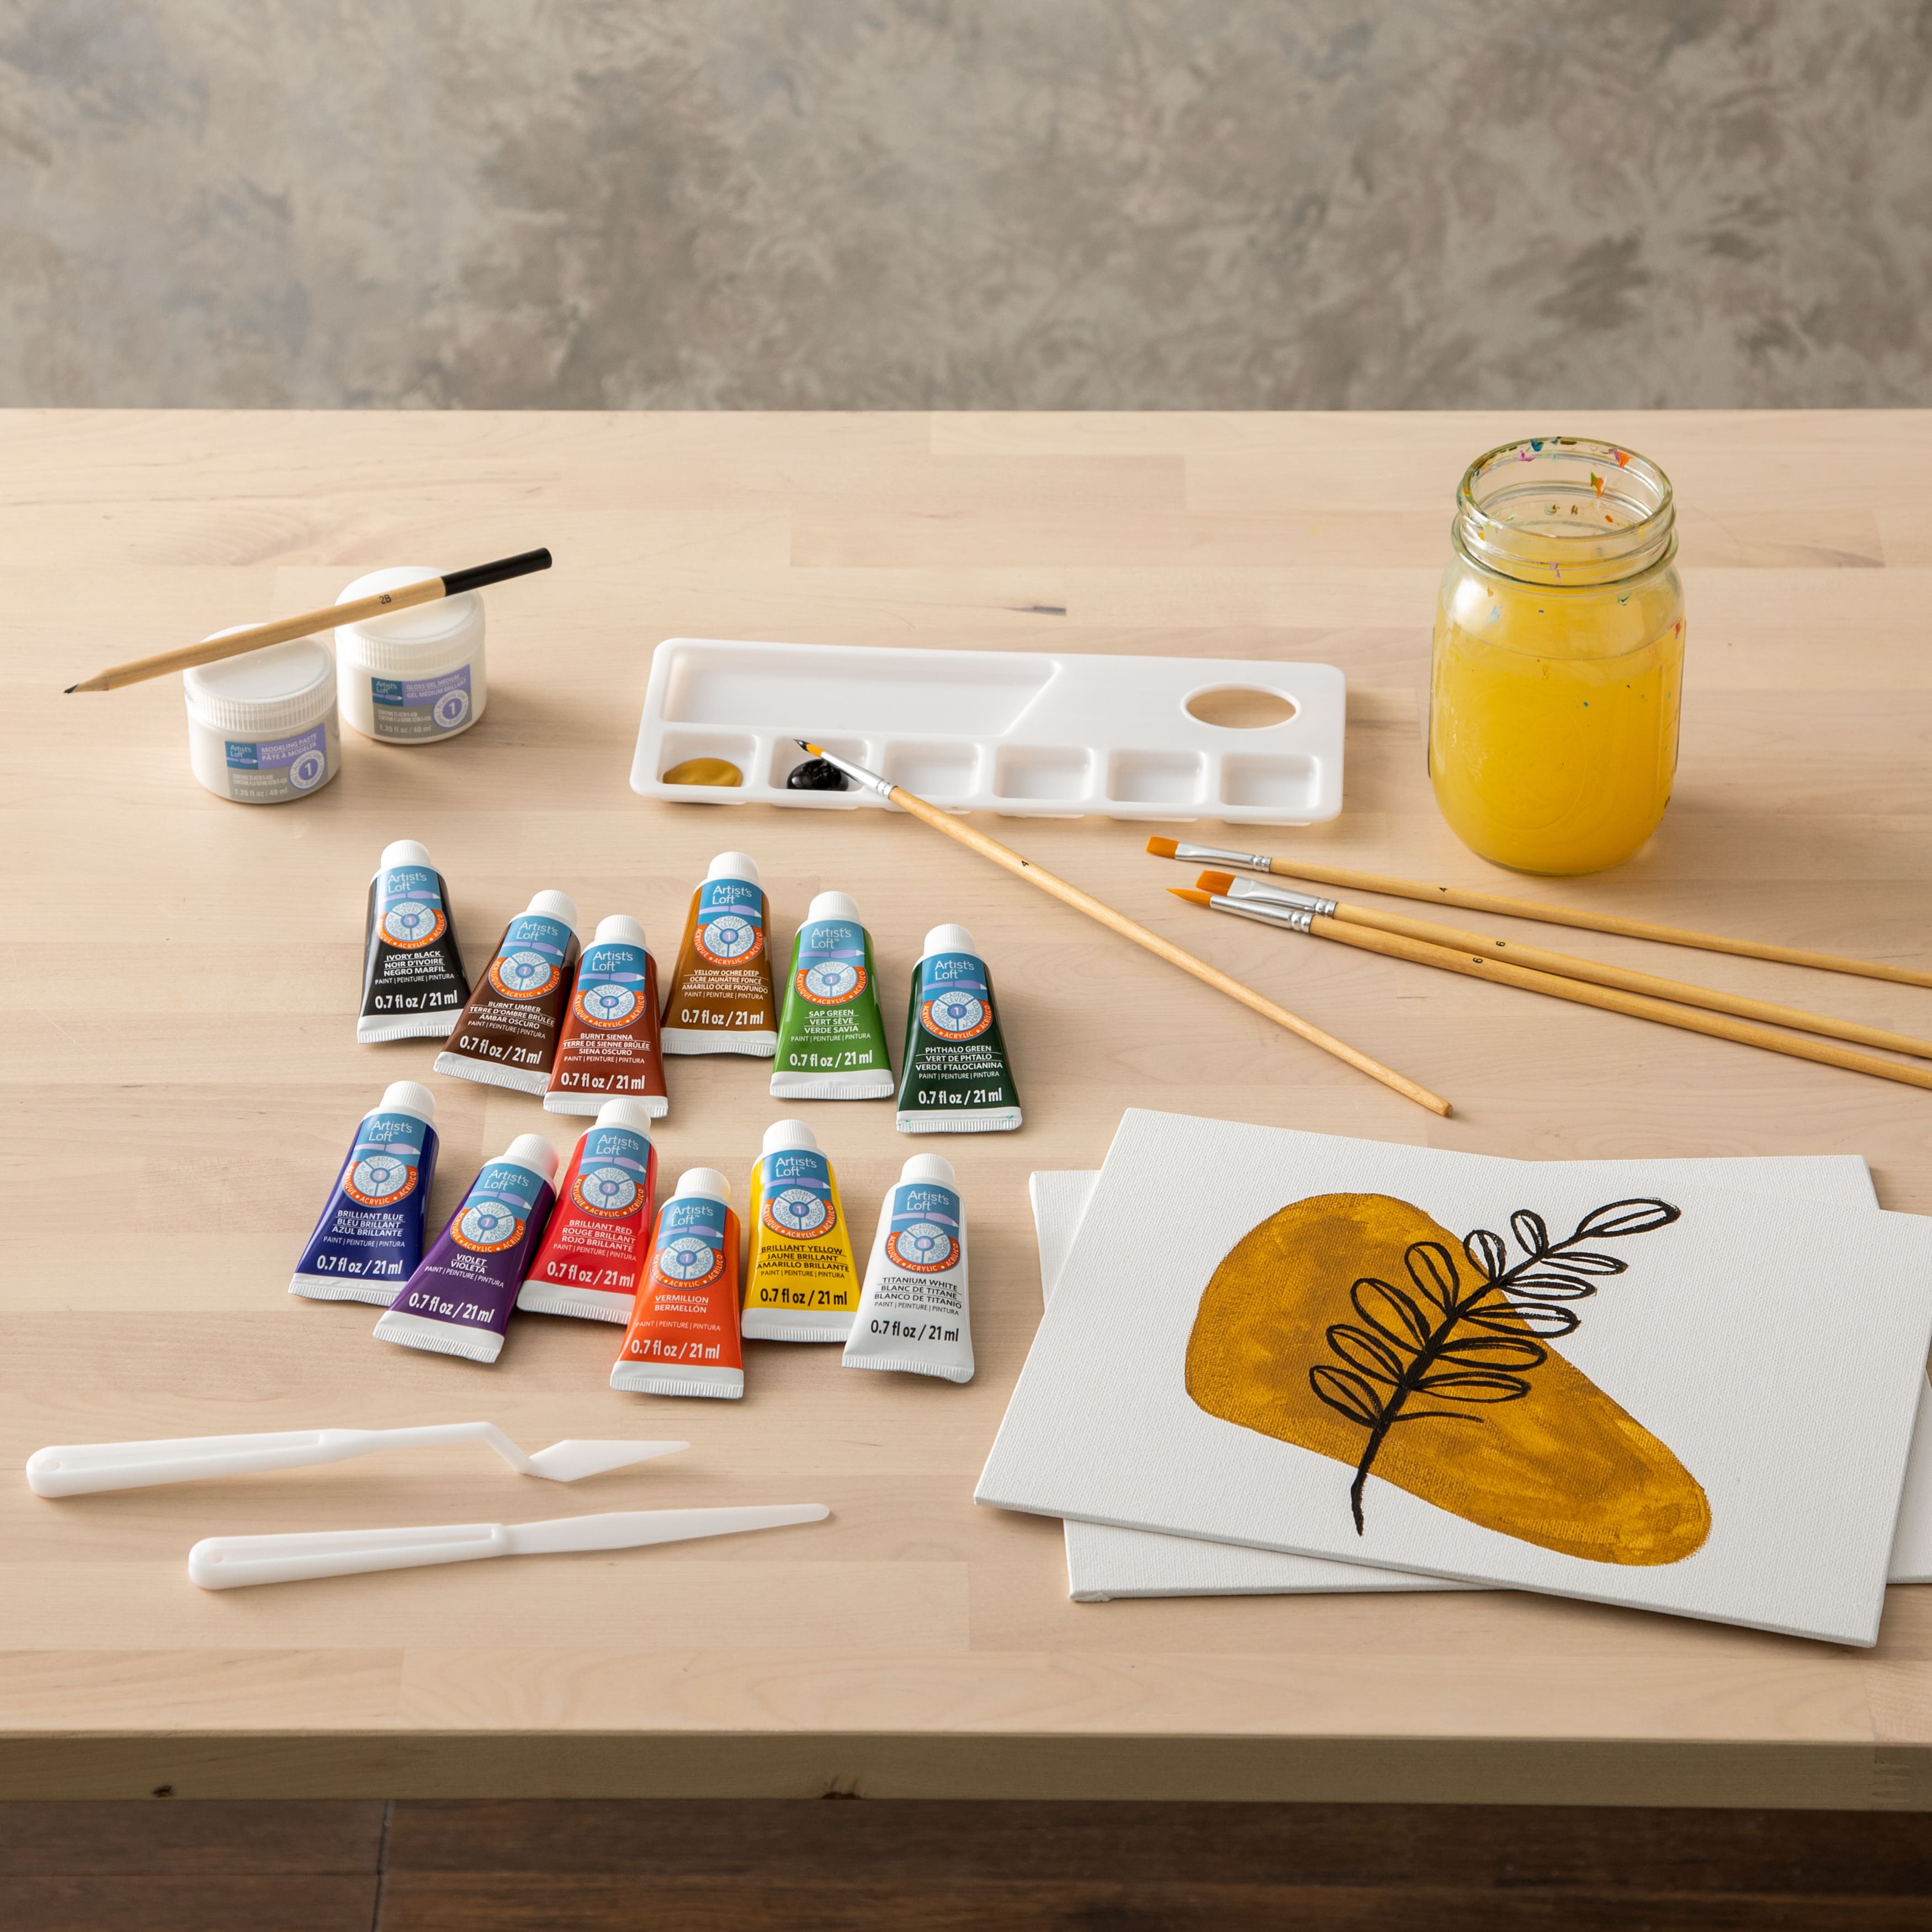 6 Color Acrylic Paint Starter Set by Artist's Loft®, 4oz